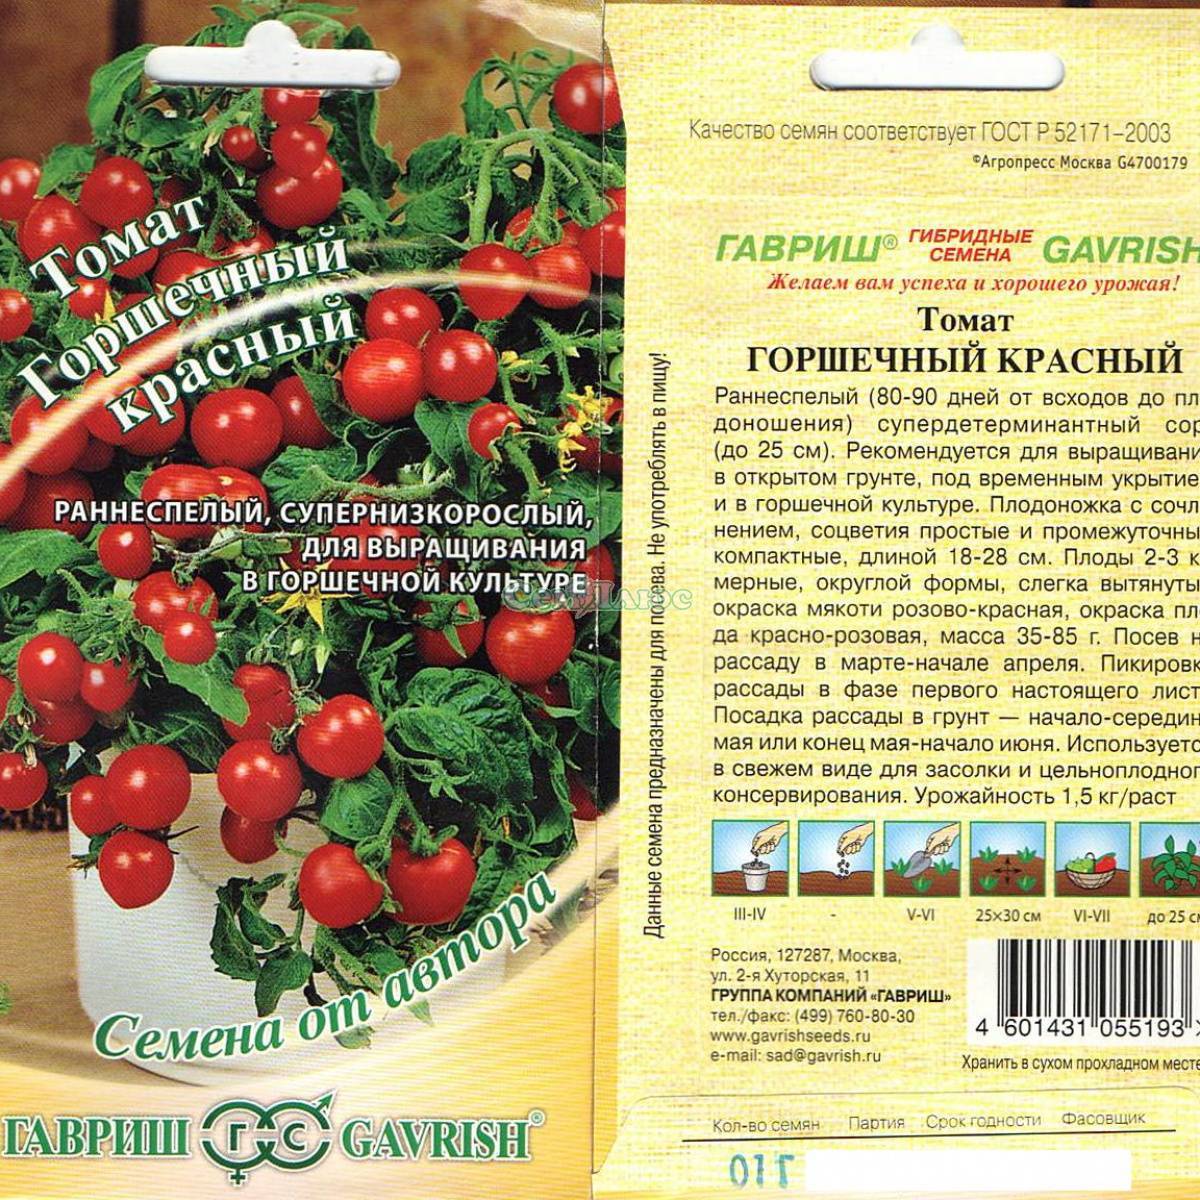 Характеристика супердетерминантного томата Горшечный красный и способ выращивания сорта